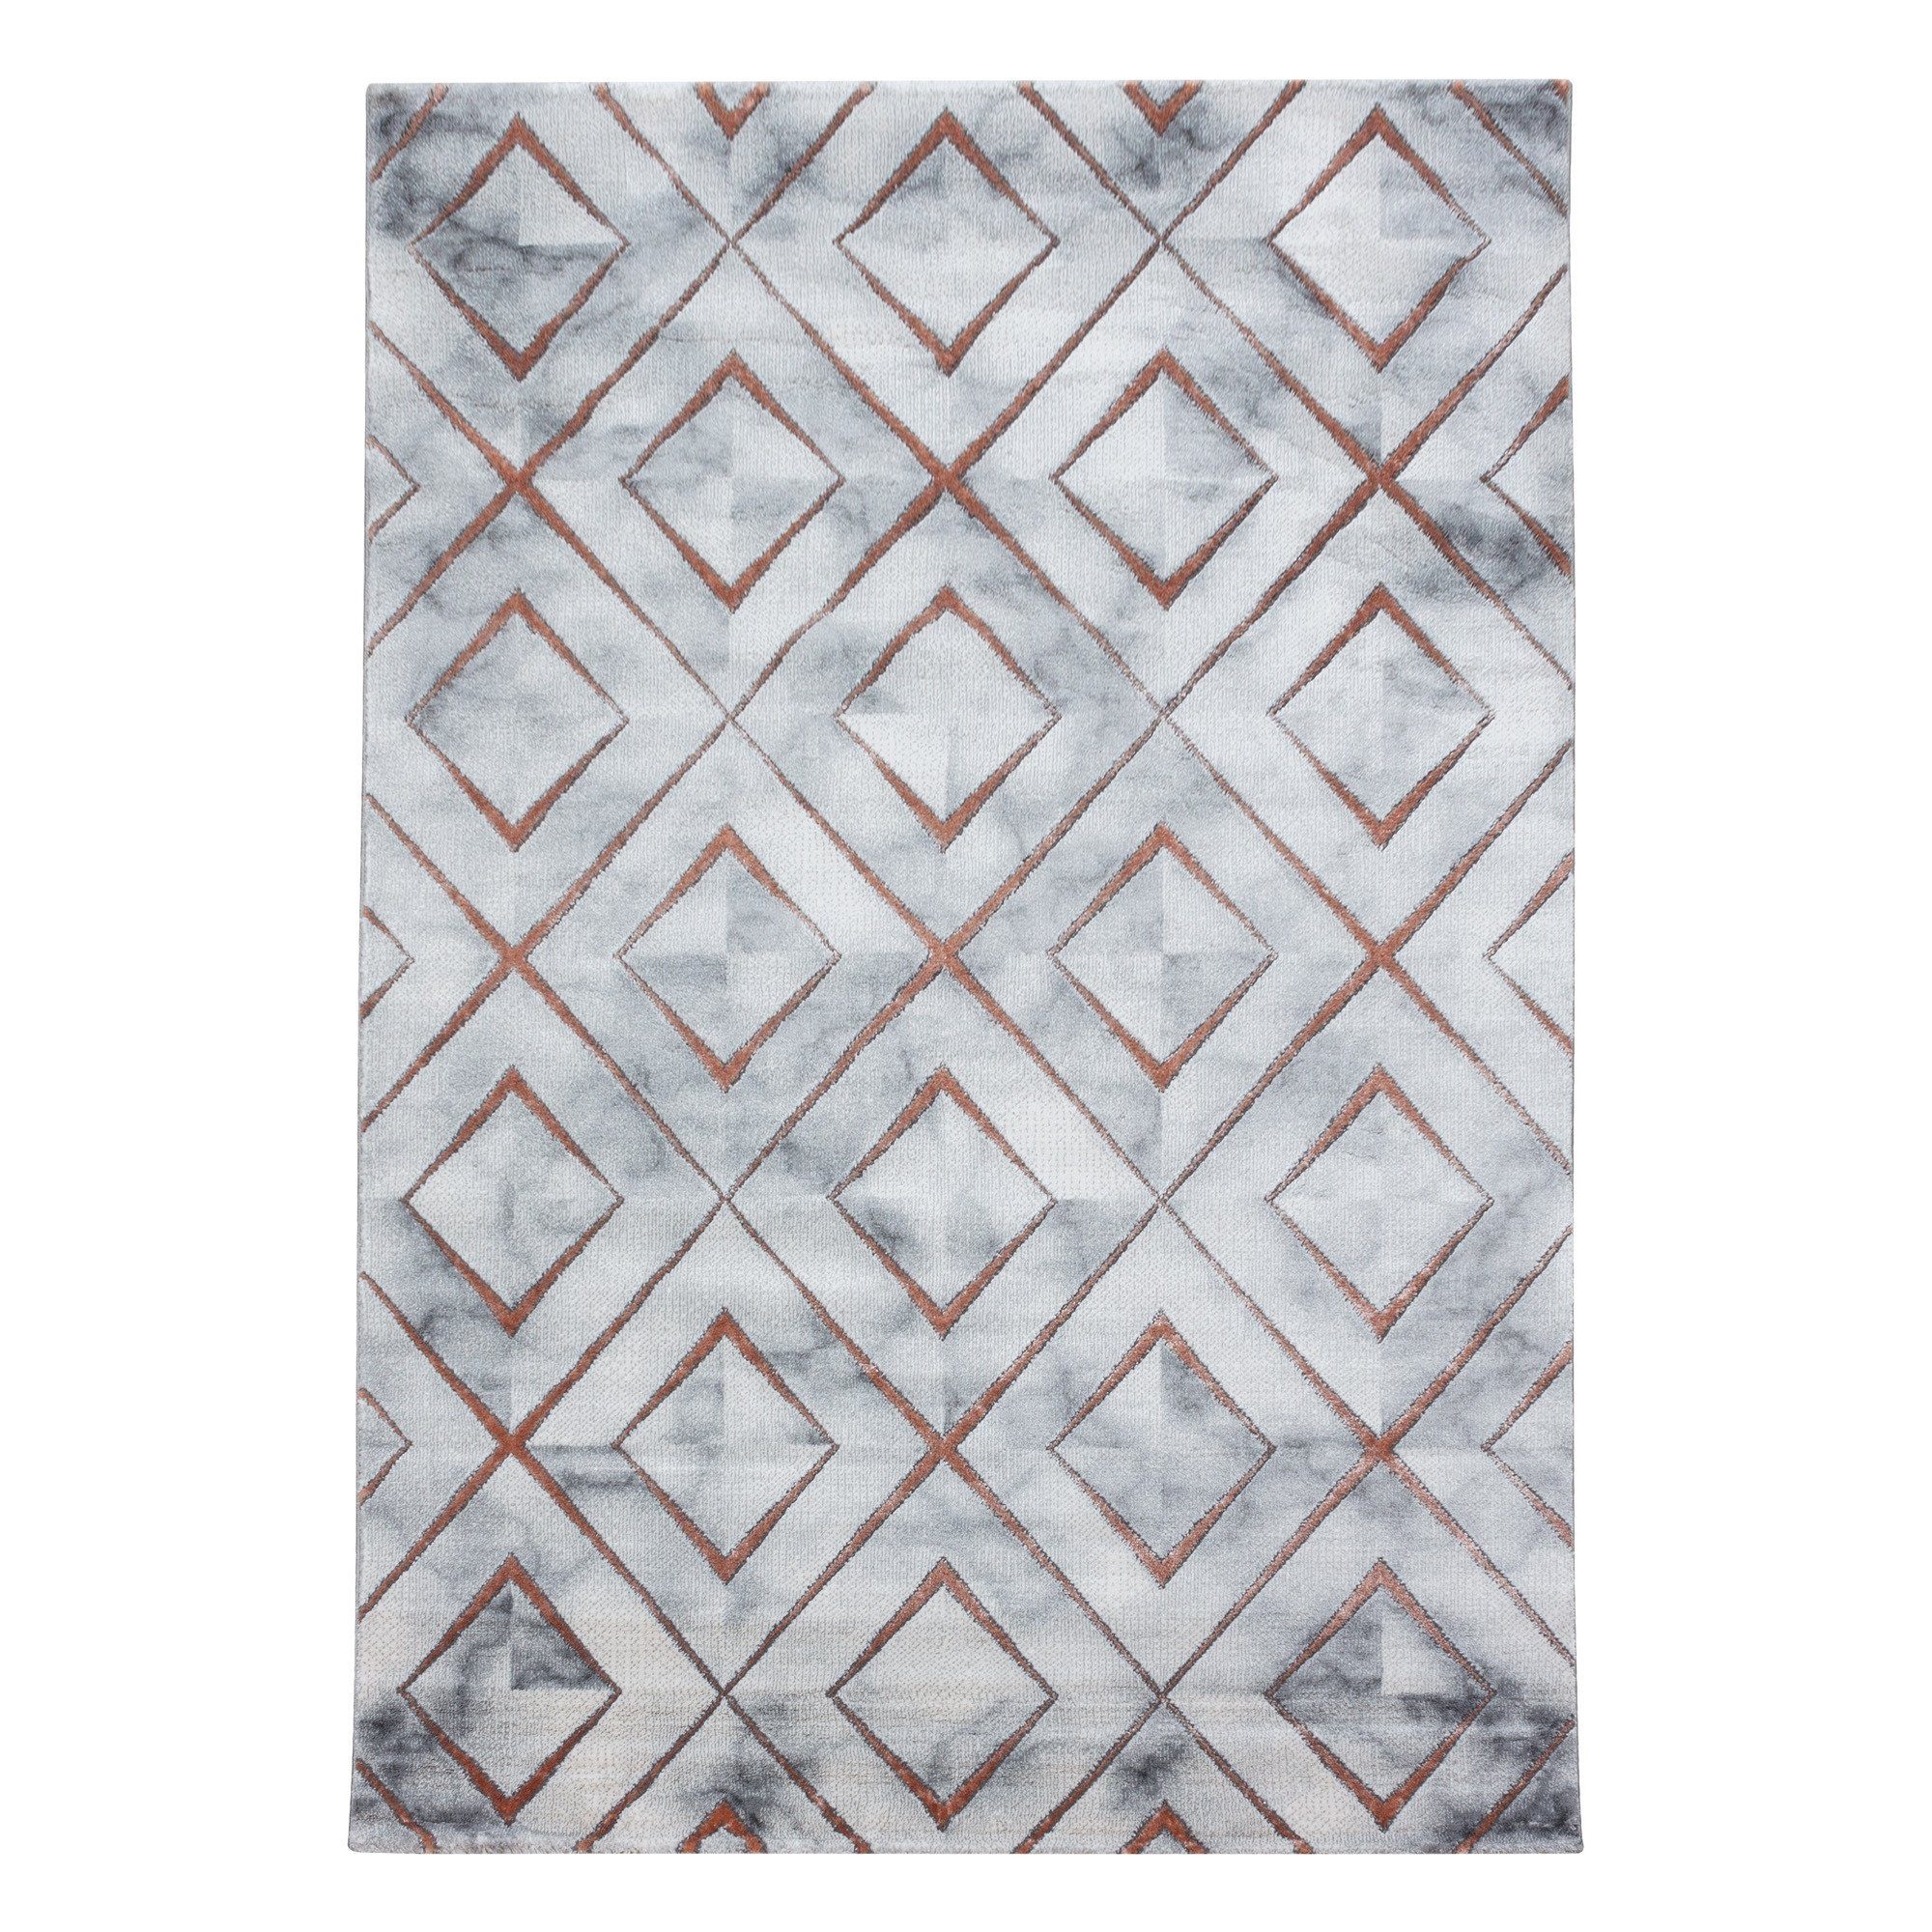 Bronze Flachflorteppich Designteppich Muster, Kurzflorteppich Giancasa Marmoroptik Wohnzimmer